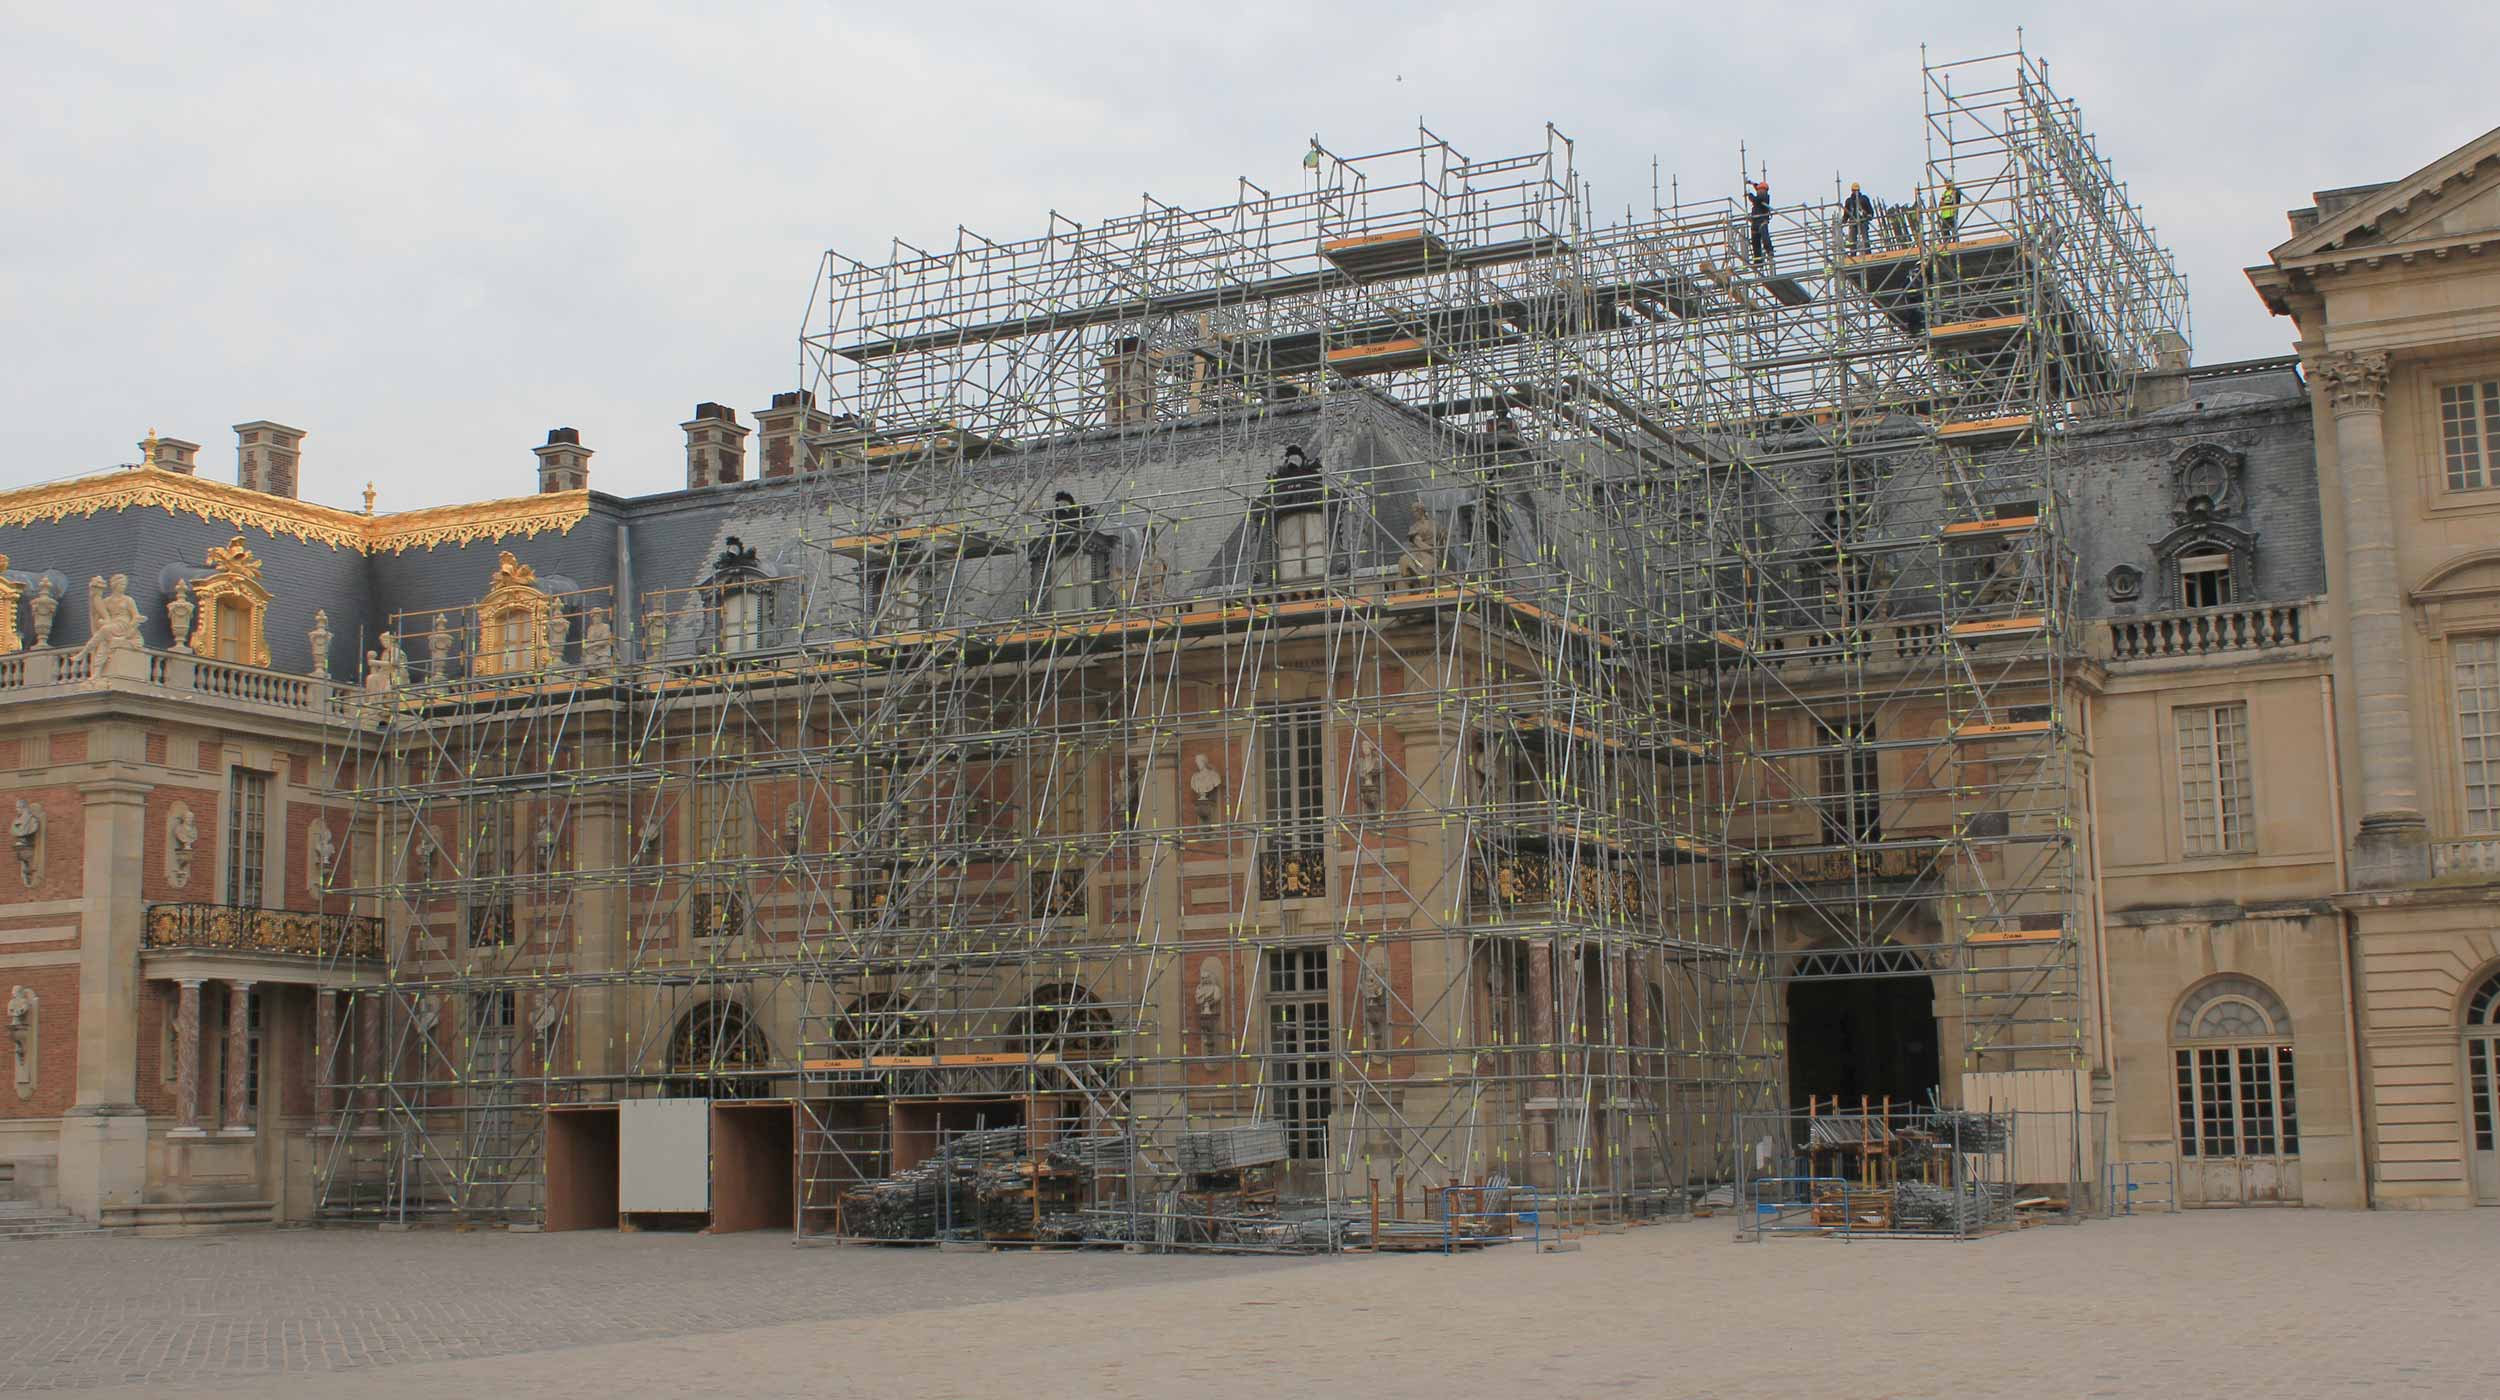 Zadanie obejmowało przeprowadzenie prac renowacyjnych budynku pałacowego. Wszelkie prace miały być prowadzone bezpośrednio z rusztowań.